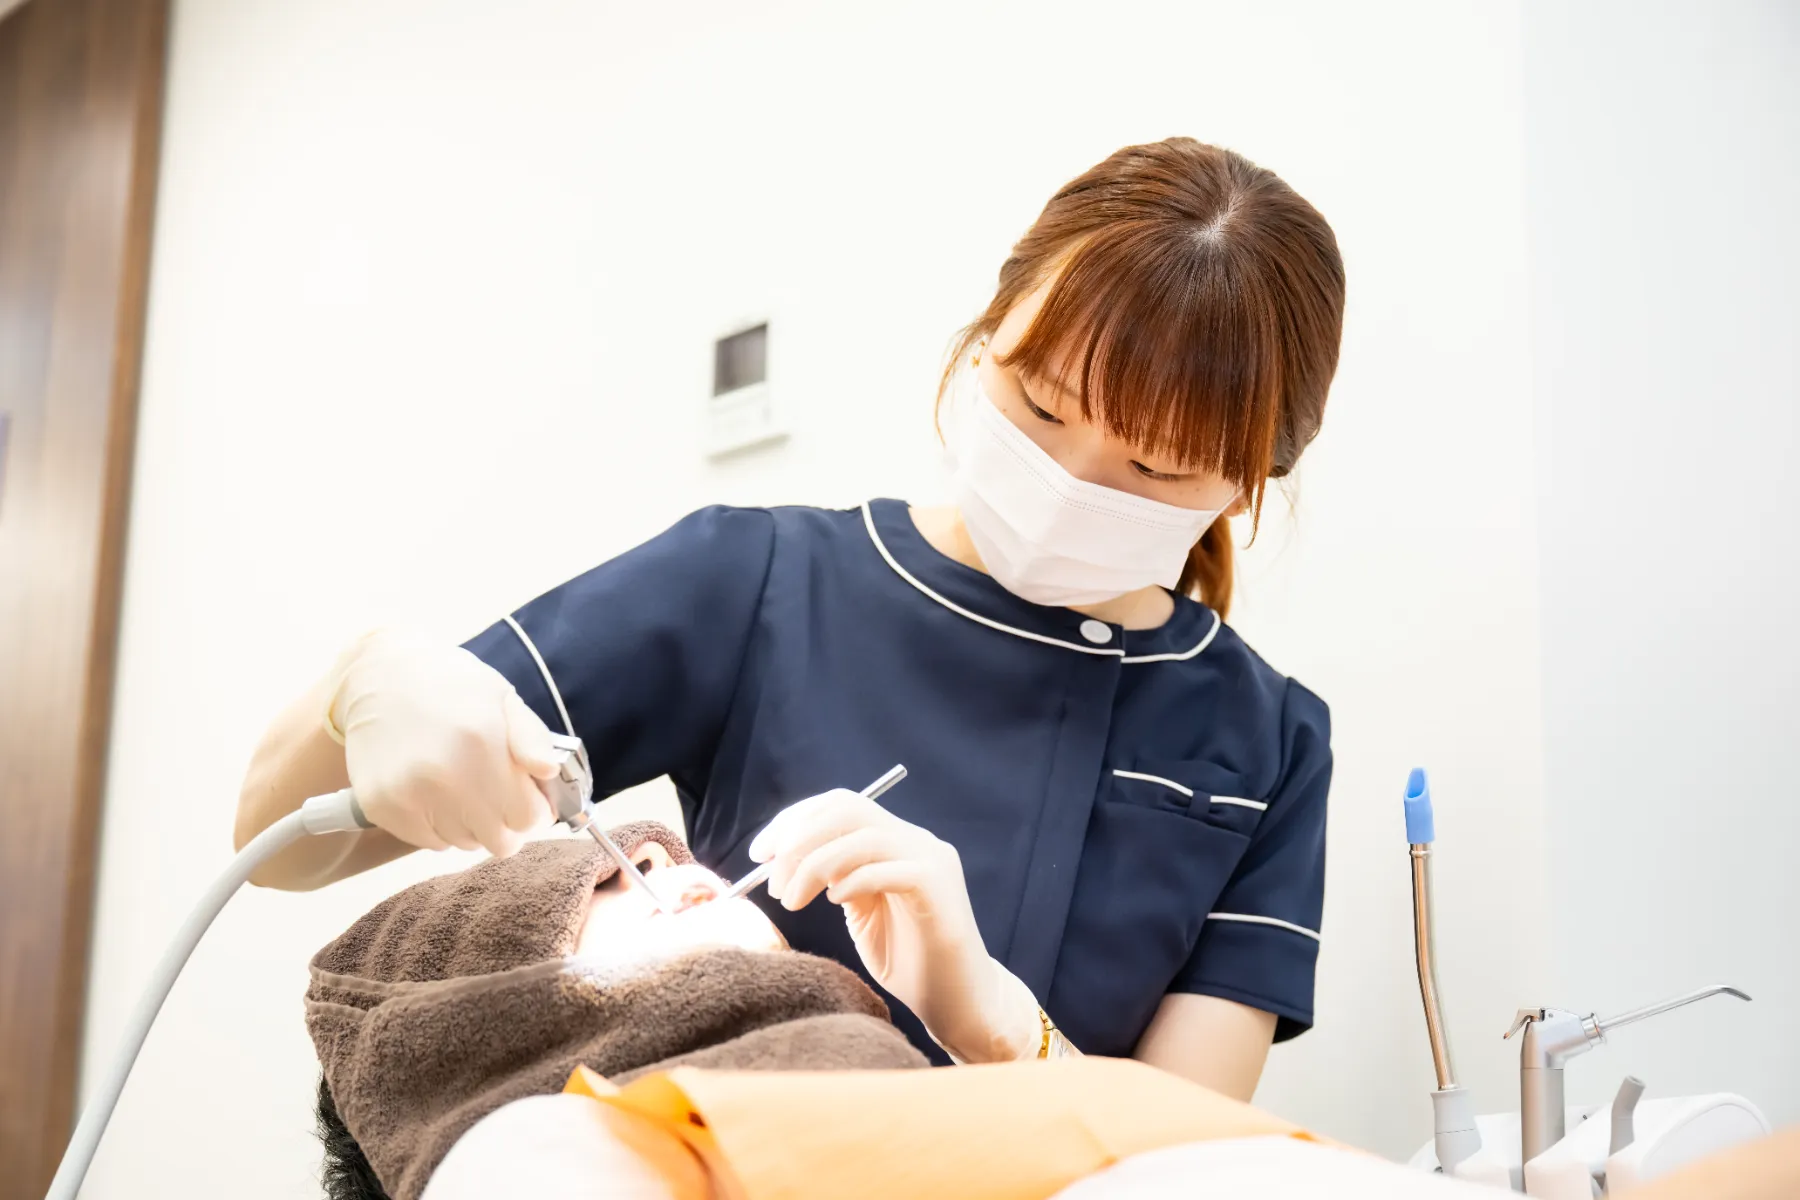 大宮駅の歯医者「アーバン歯科・矯正歯科 大宮ラクーン院」は患者様それぞれに最適な治療をご提案します